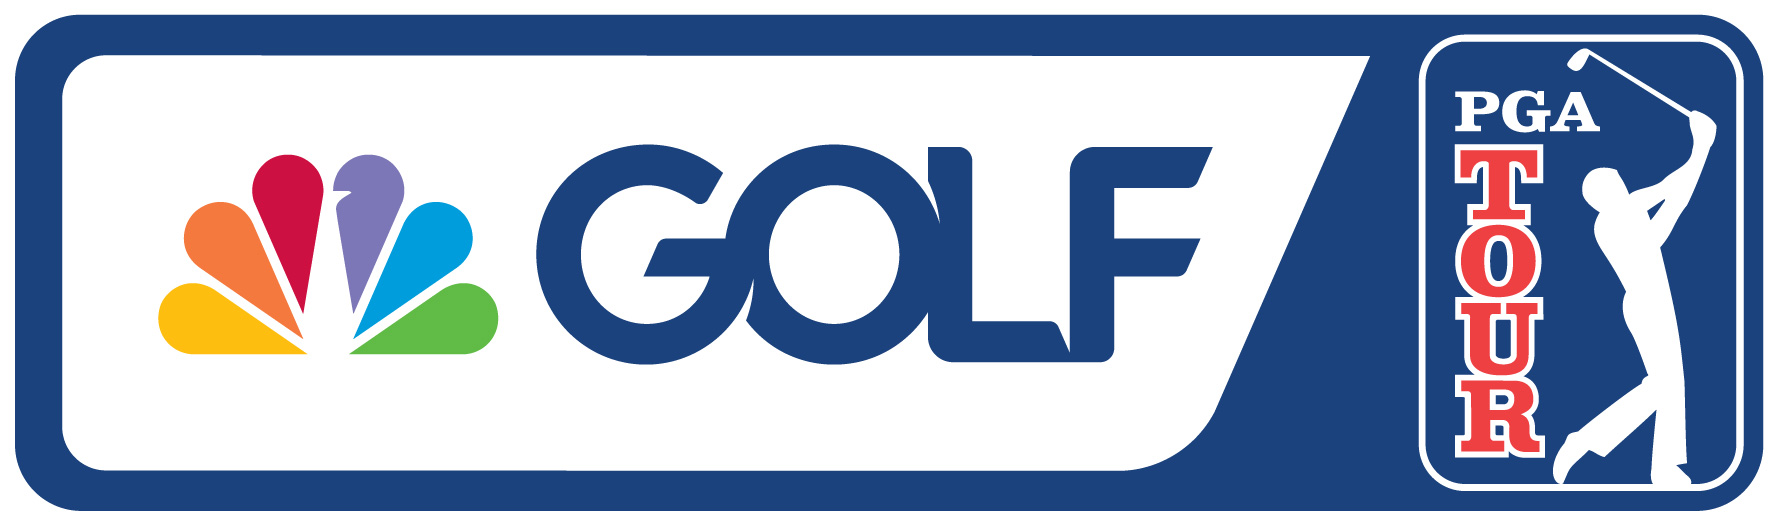 NBC SPORTS ANNOUNCES 2023 PGA TOUR BROADCAST SCHEDULE NBC Sports